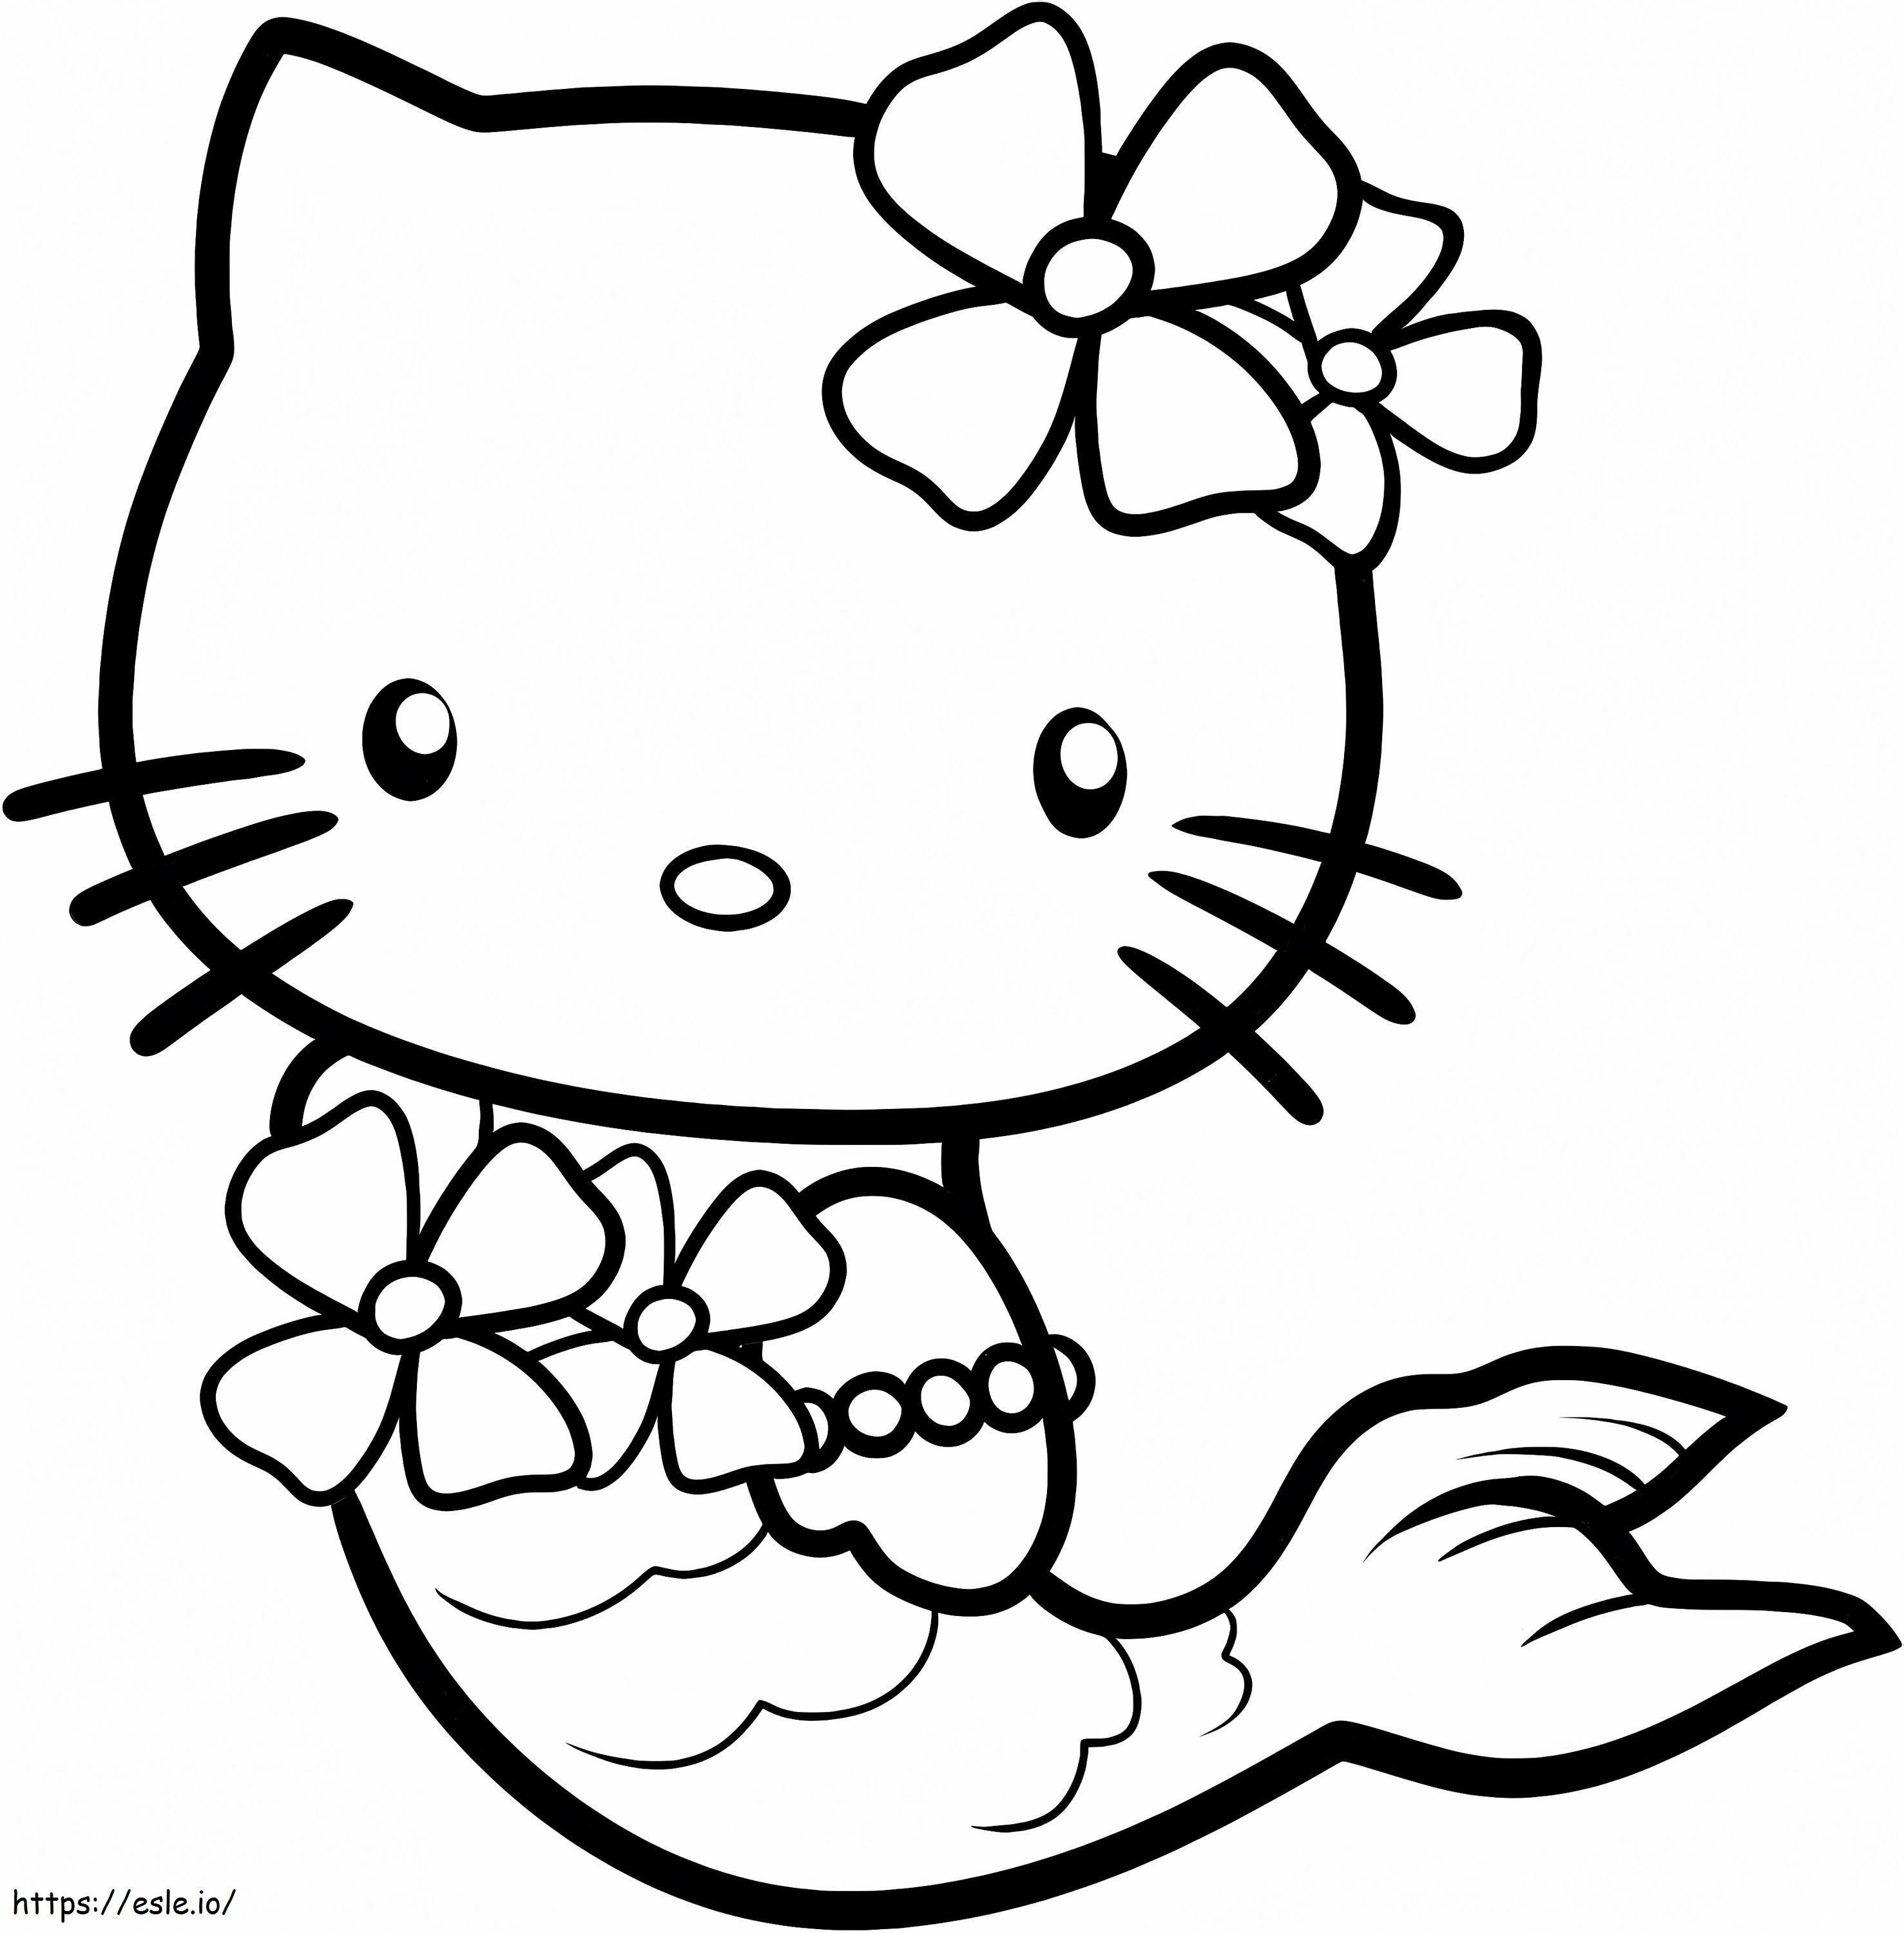 1539941740 Kitty Hello Kitty Sirene Pagine gratuite per bambini in 6 immagini del tutu della principessa Karafbistro da colorare